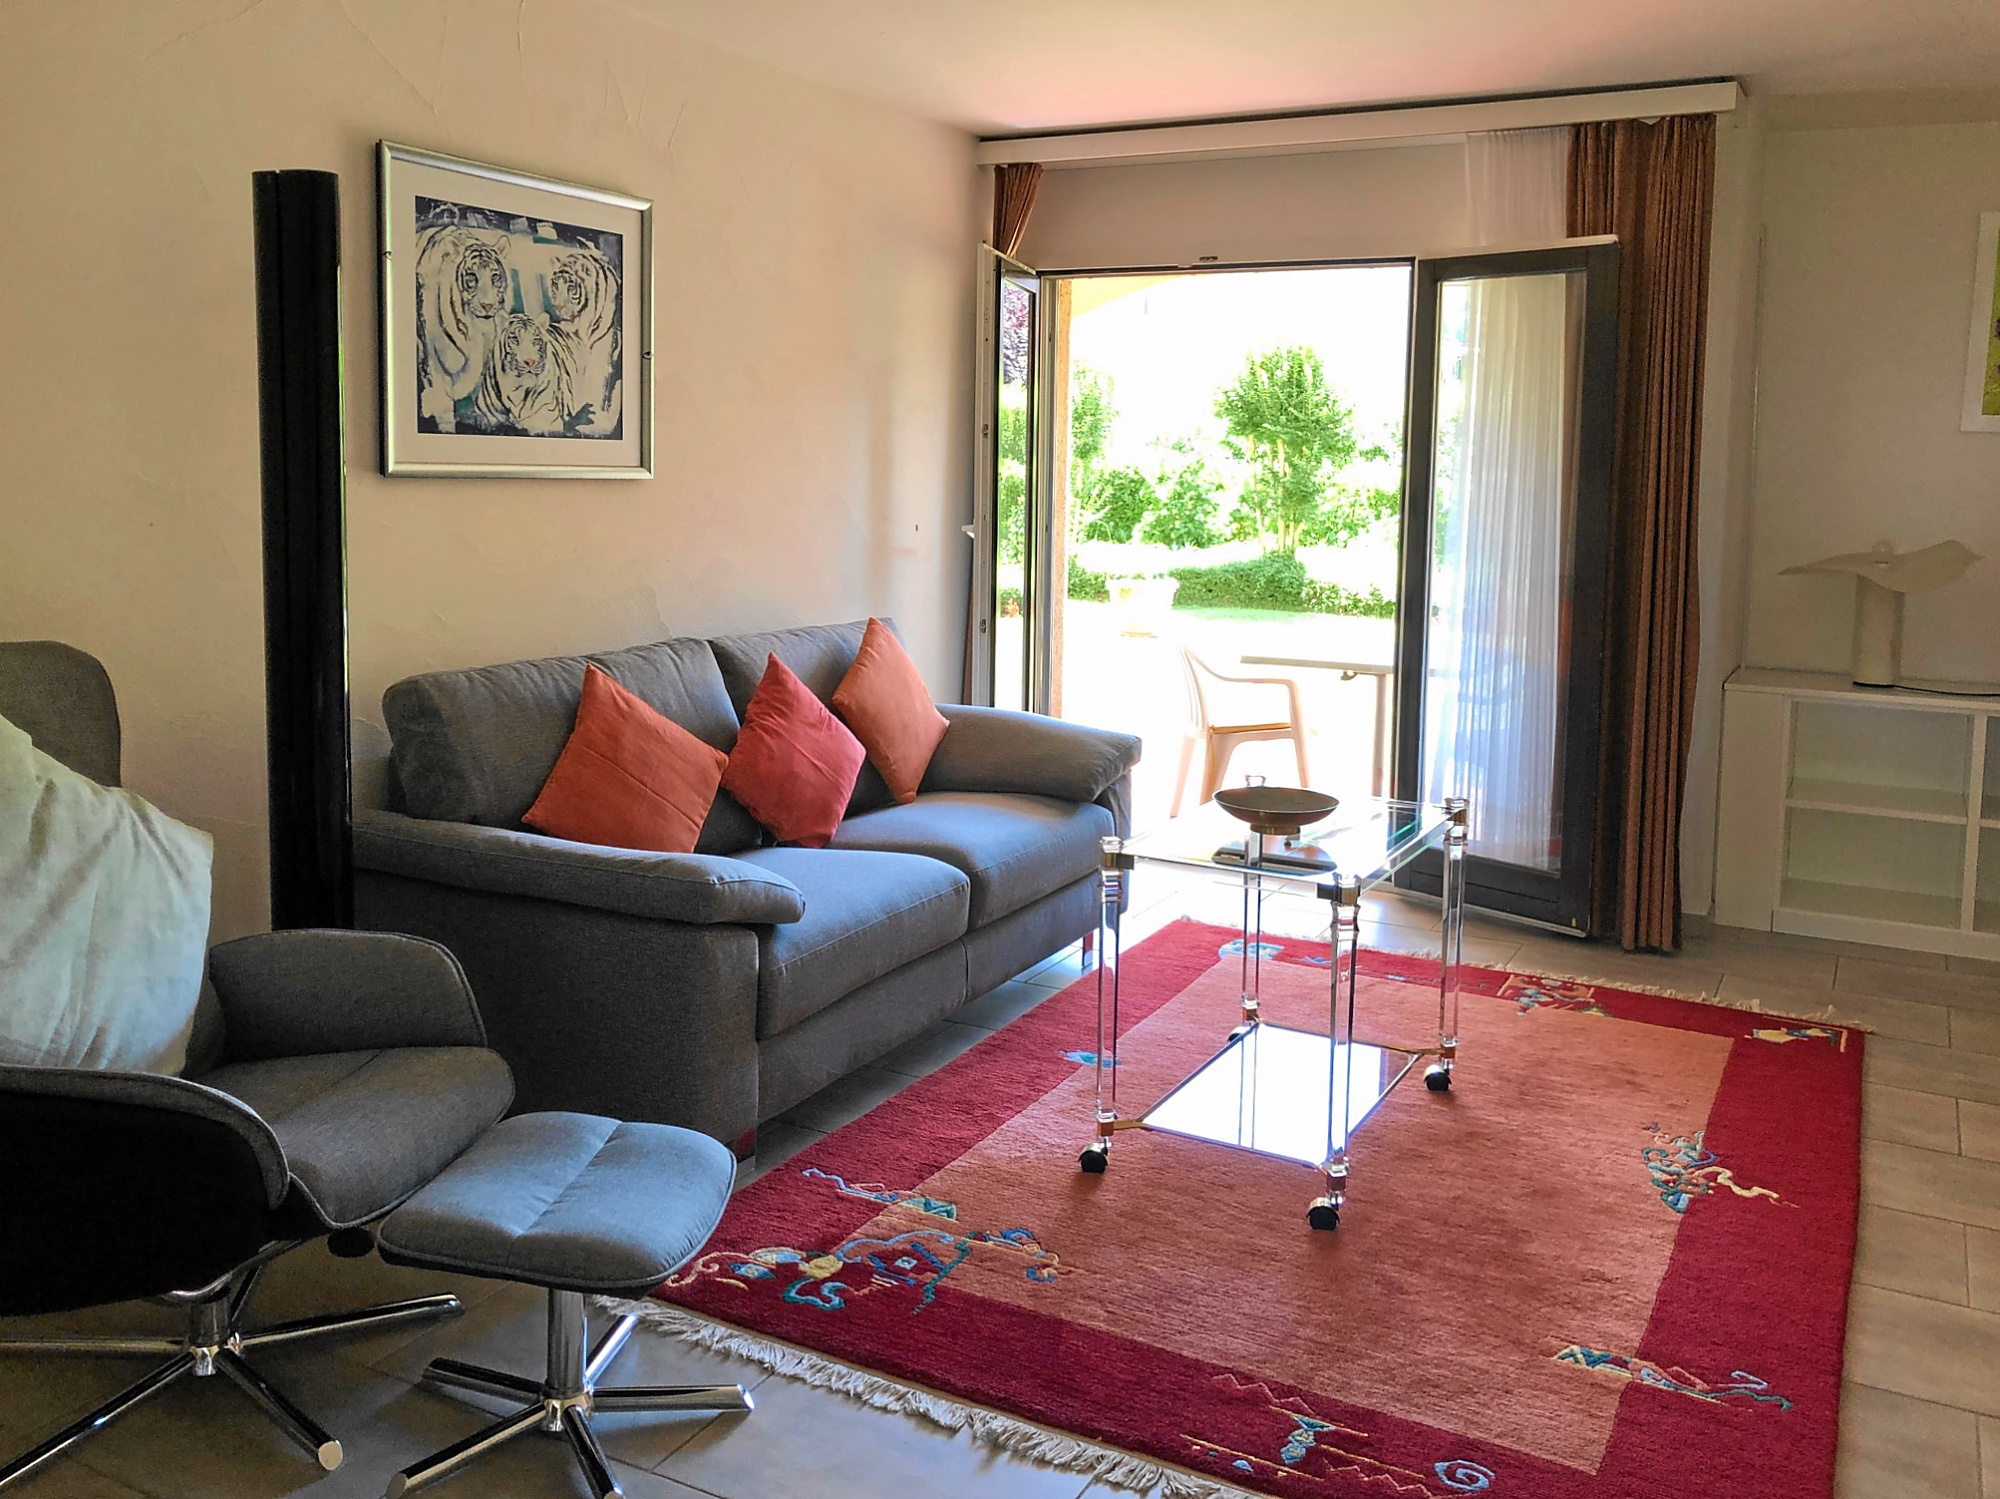 1,5-Zimmer- Ferienwohnung 'Residenza Parcolago', Via San Michele 50, Caslano, Luganersee